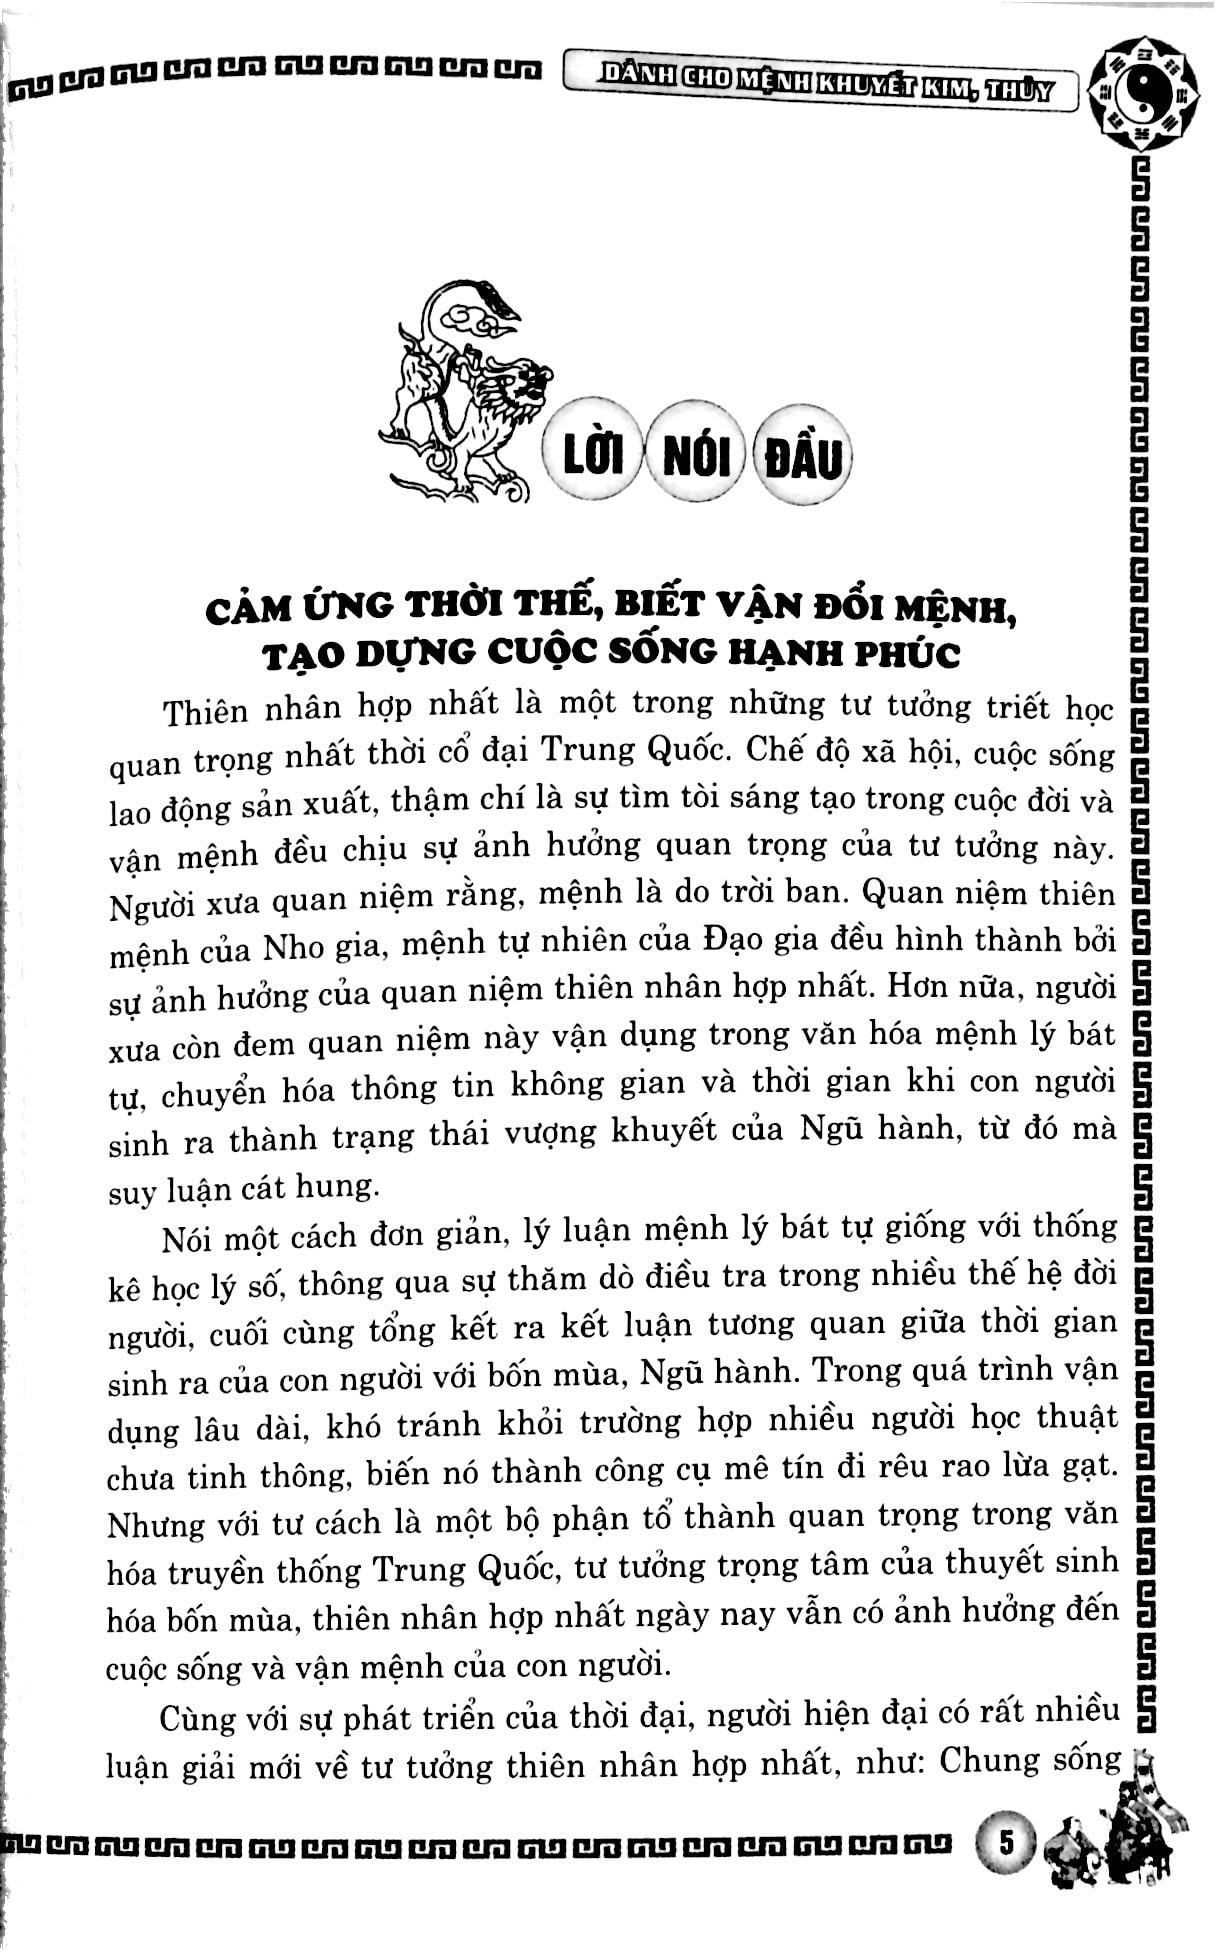 Phong Thủy Cải Vận - Dành Cho Mệnh Khuyết Kim, Thủy Quyển Xuân, Hạ PDF